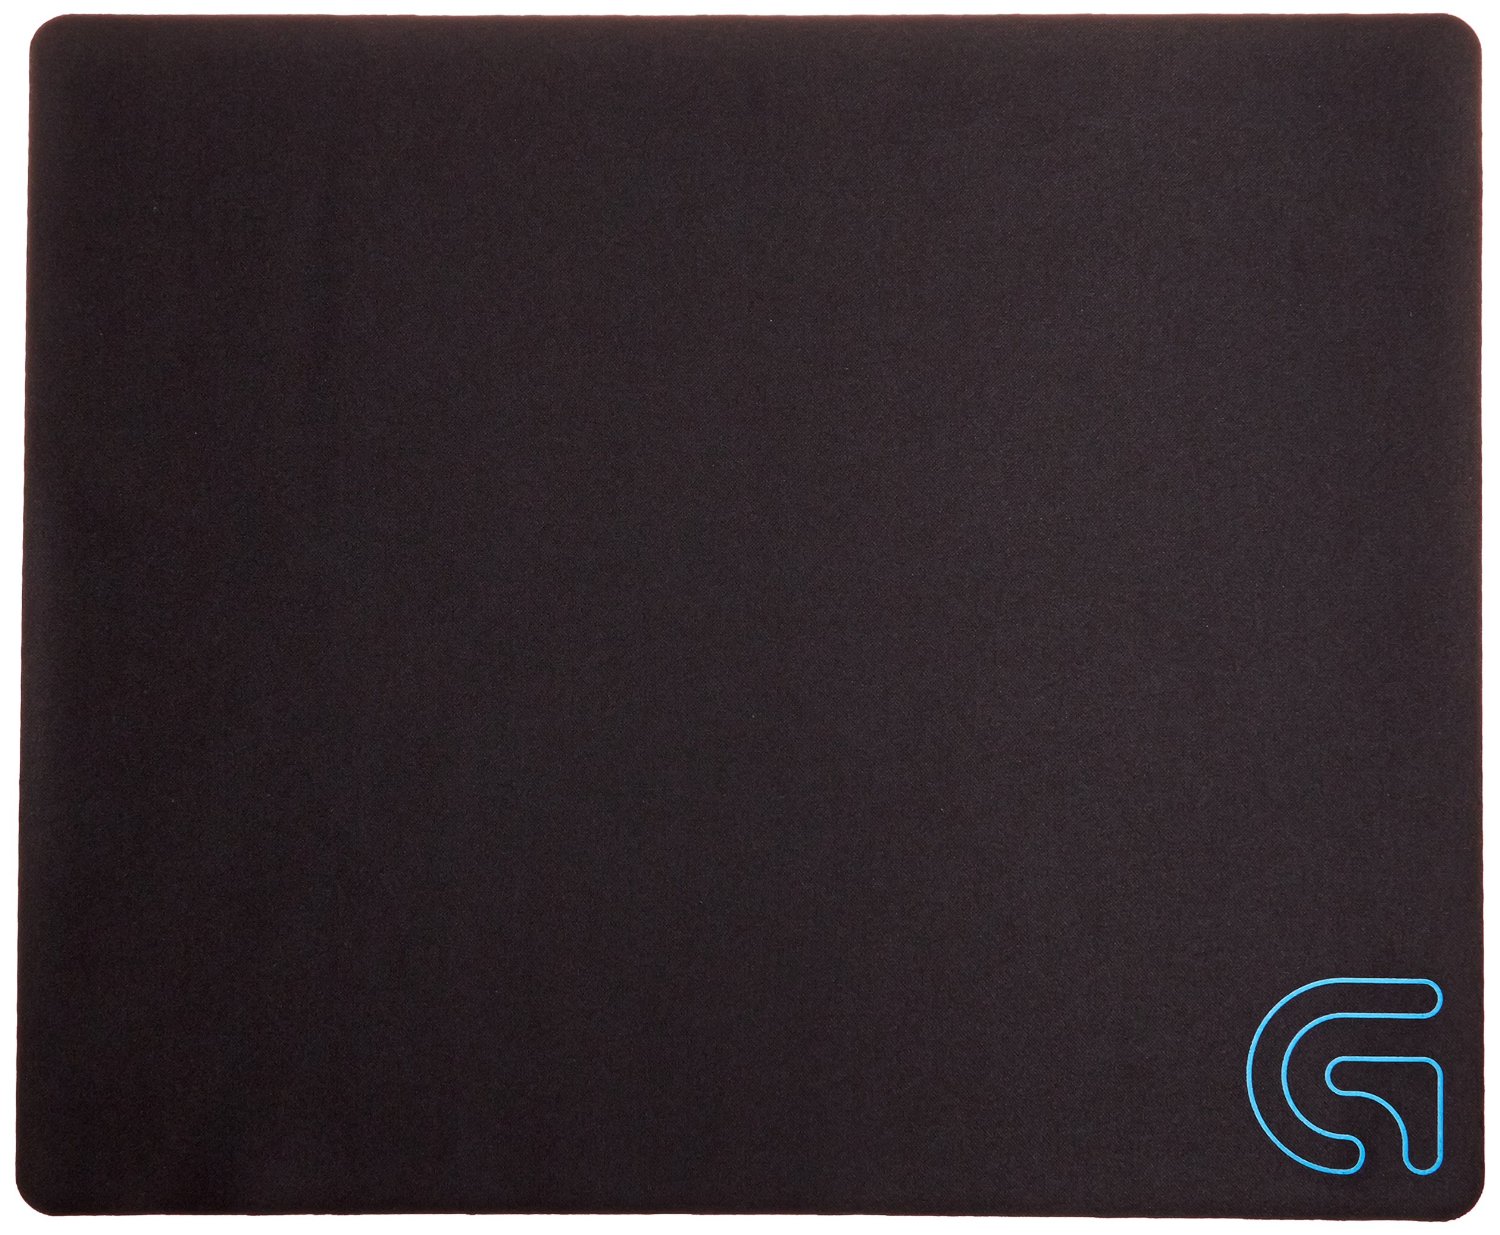  Коврик для мыши Logitech G240 Cloth Gaming Mouse Pad (280x340 мм), Черный 943-000094